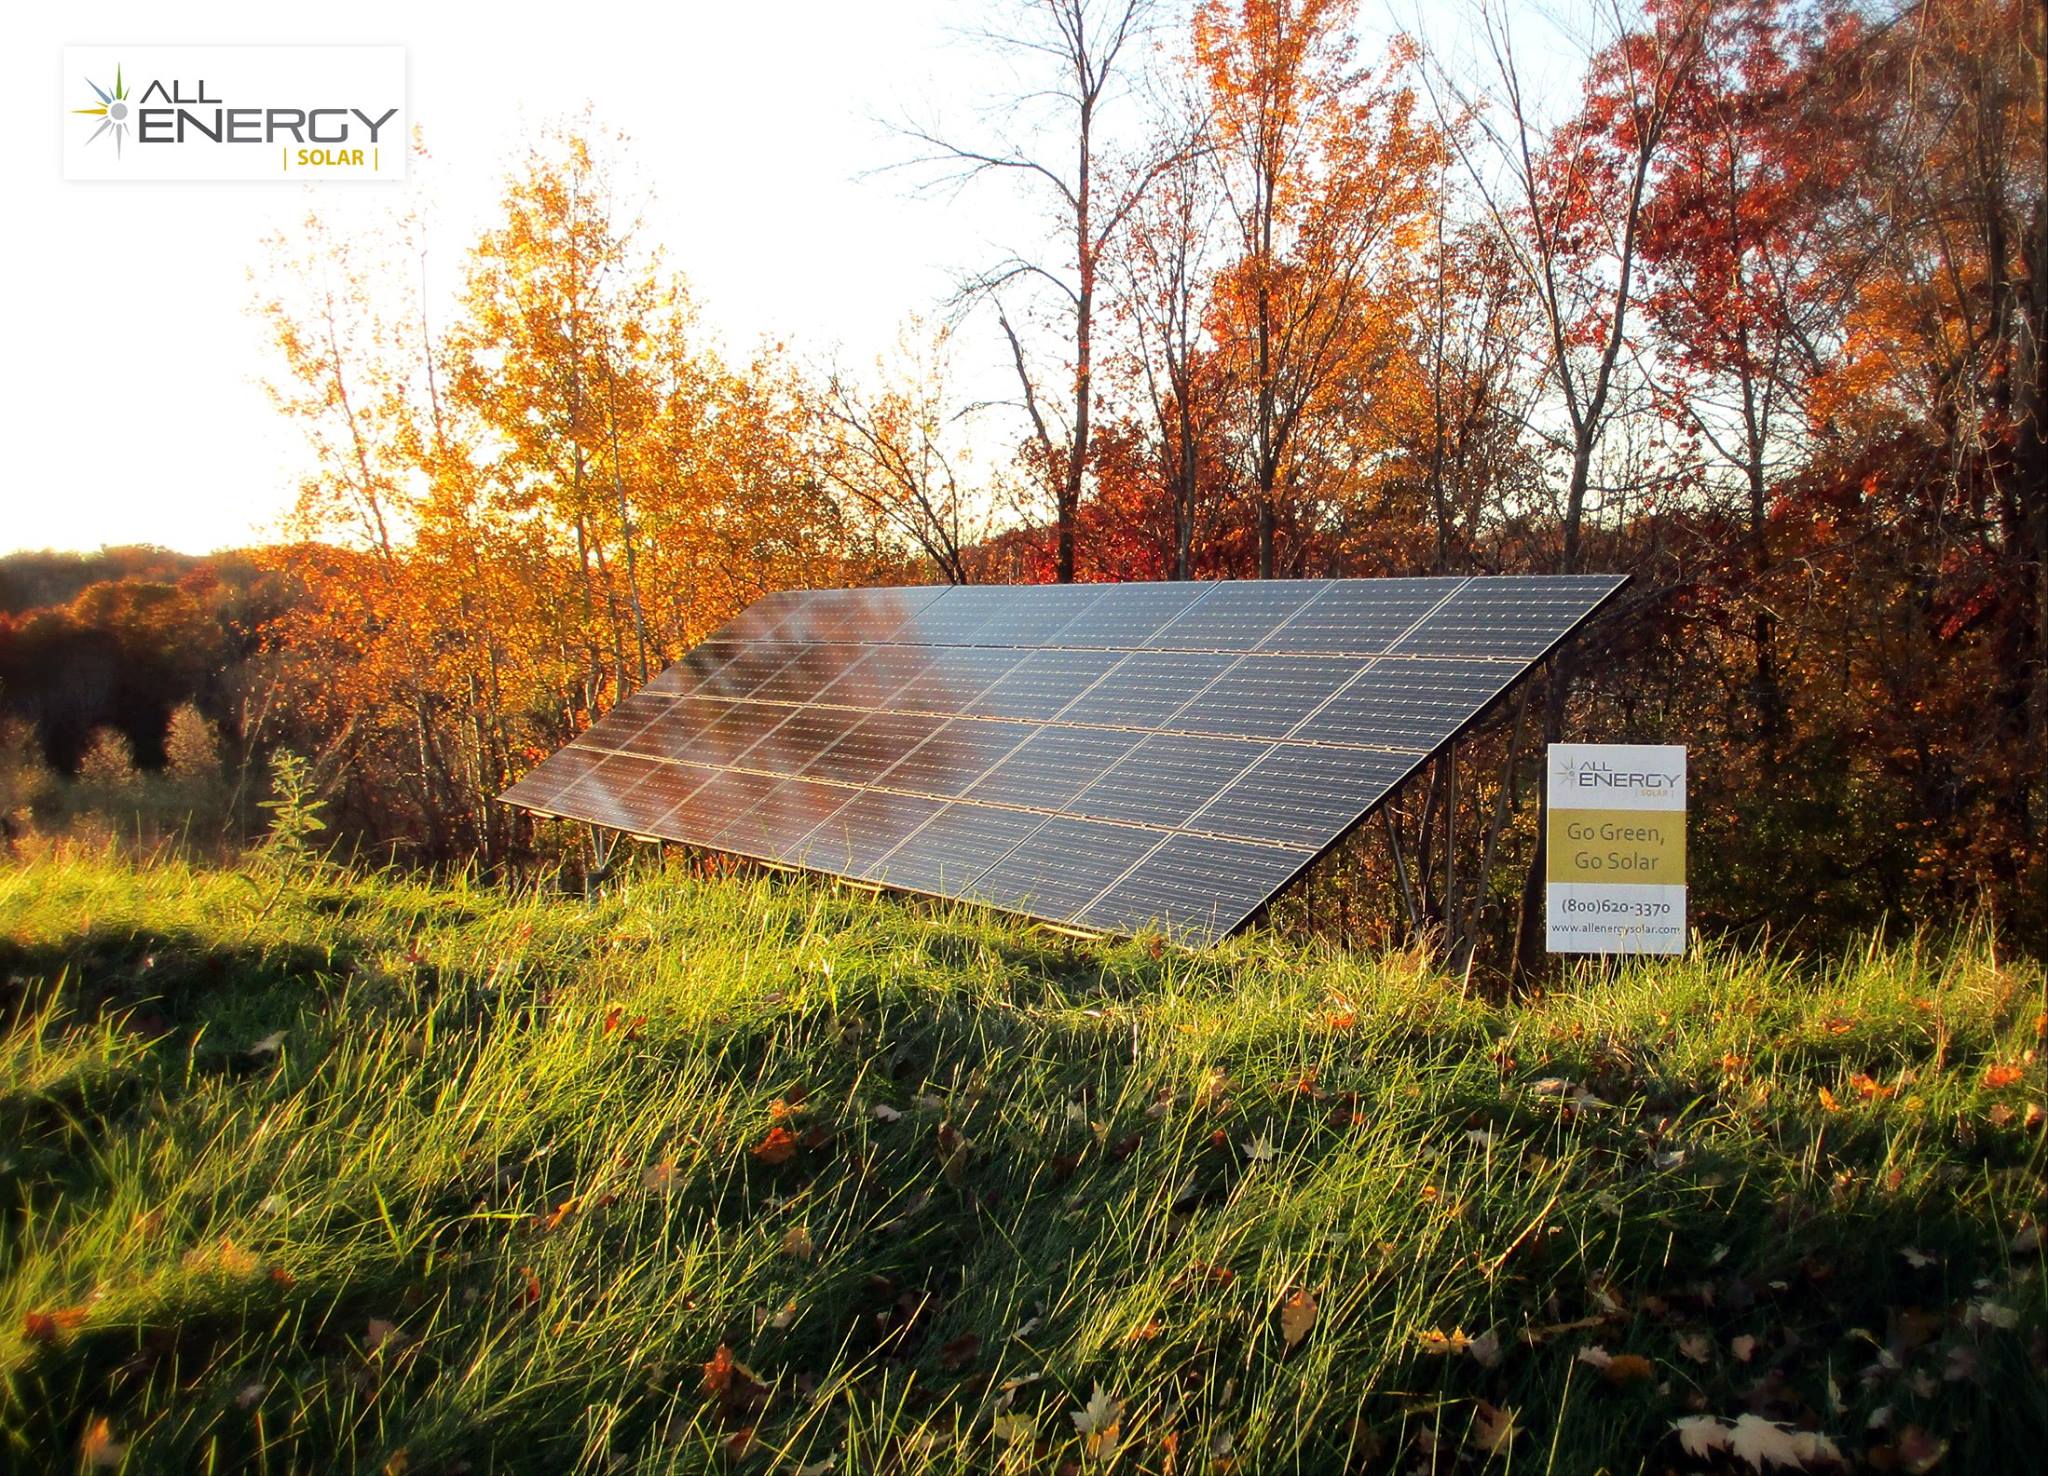 stand alone solar power array - All Energy Solar